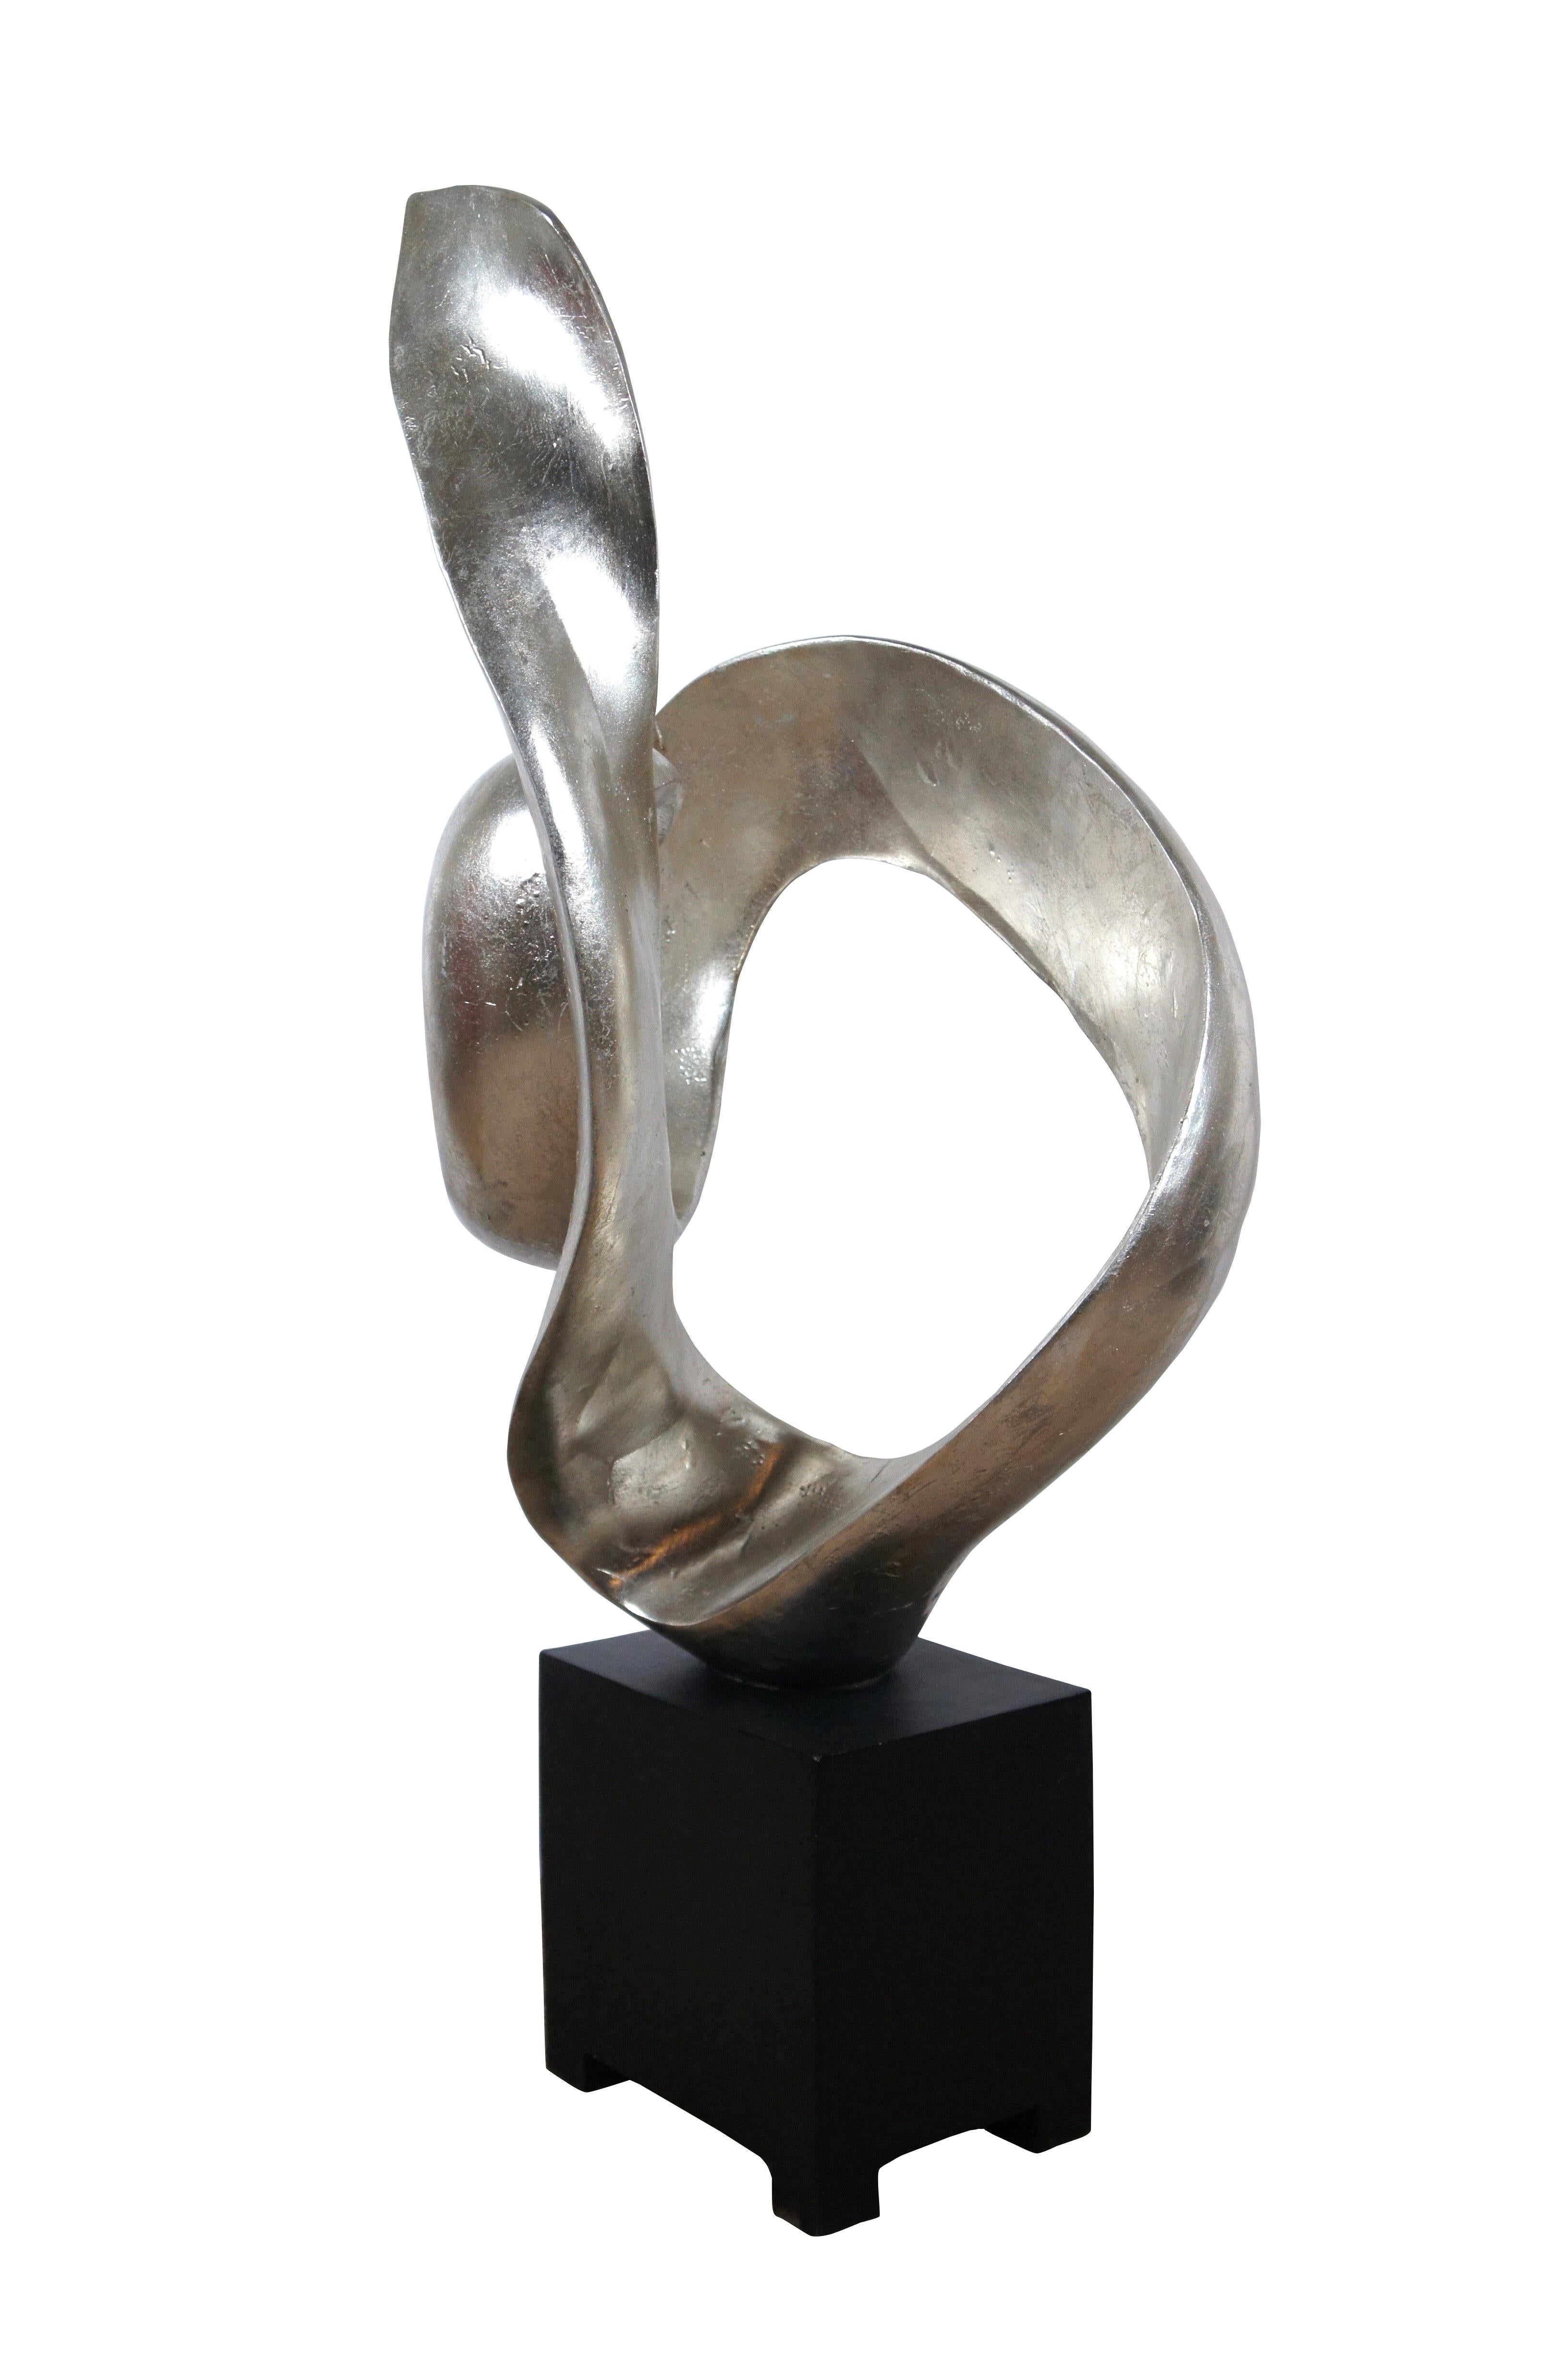 Komposit-Skulptur von Austin Productions aus dem späten 20. Jahrhundert mit einem rechteckigen schwarzen Sockel, der eine abstrakte, silbervergoldete, wirbelnde Form trägt.

Abmessungen:
18